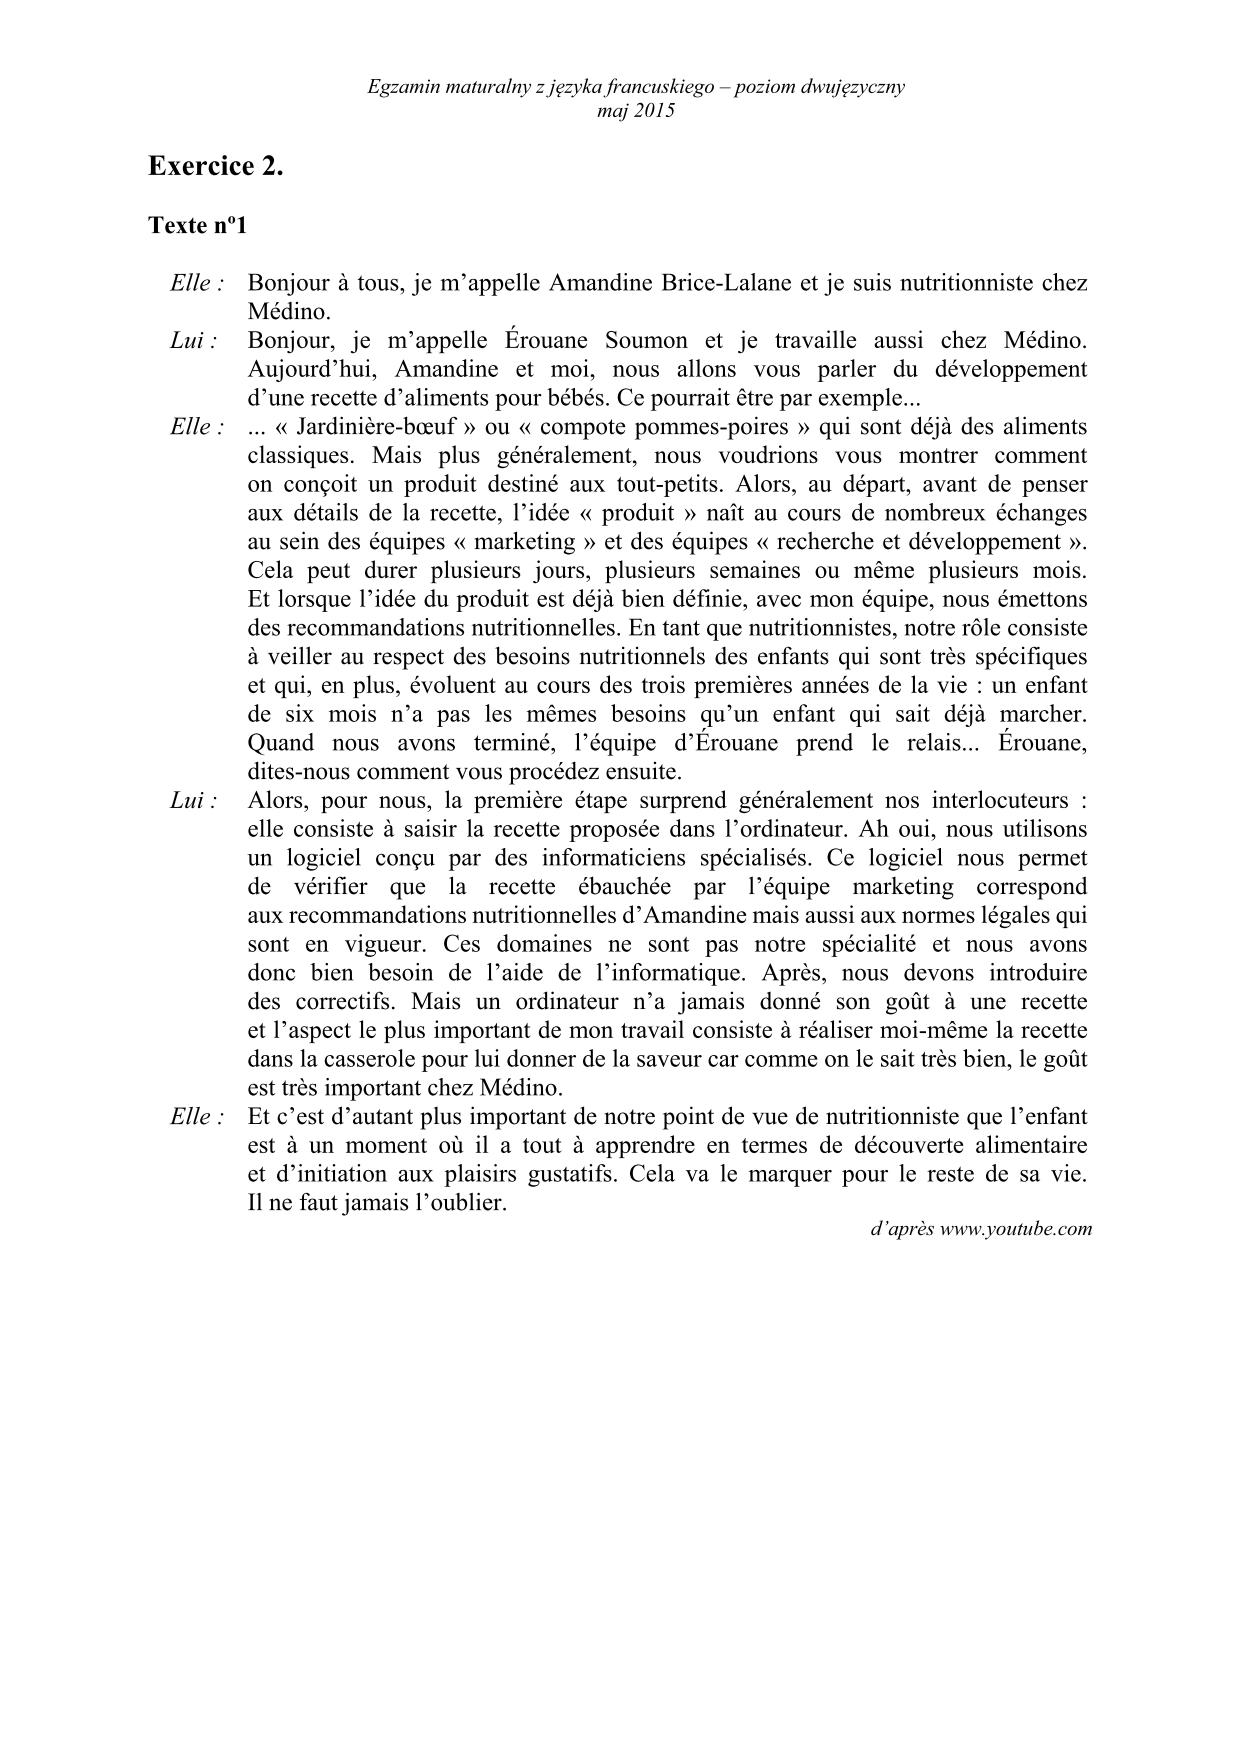 transkrypcja-jezyk-francuski-dla-absolwentow-klas-dwujezycznych-matura-2015-2